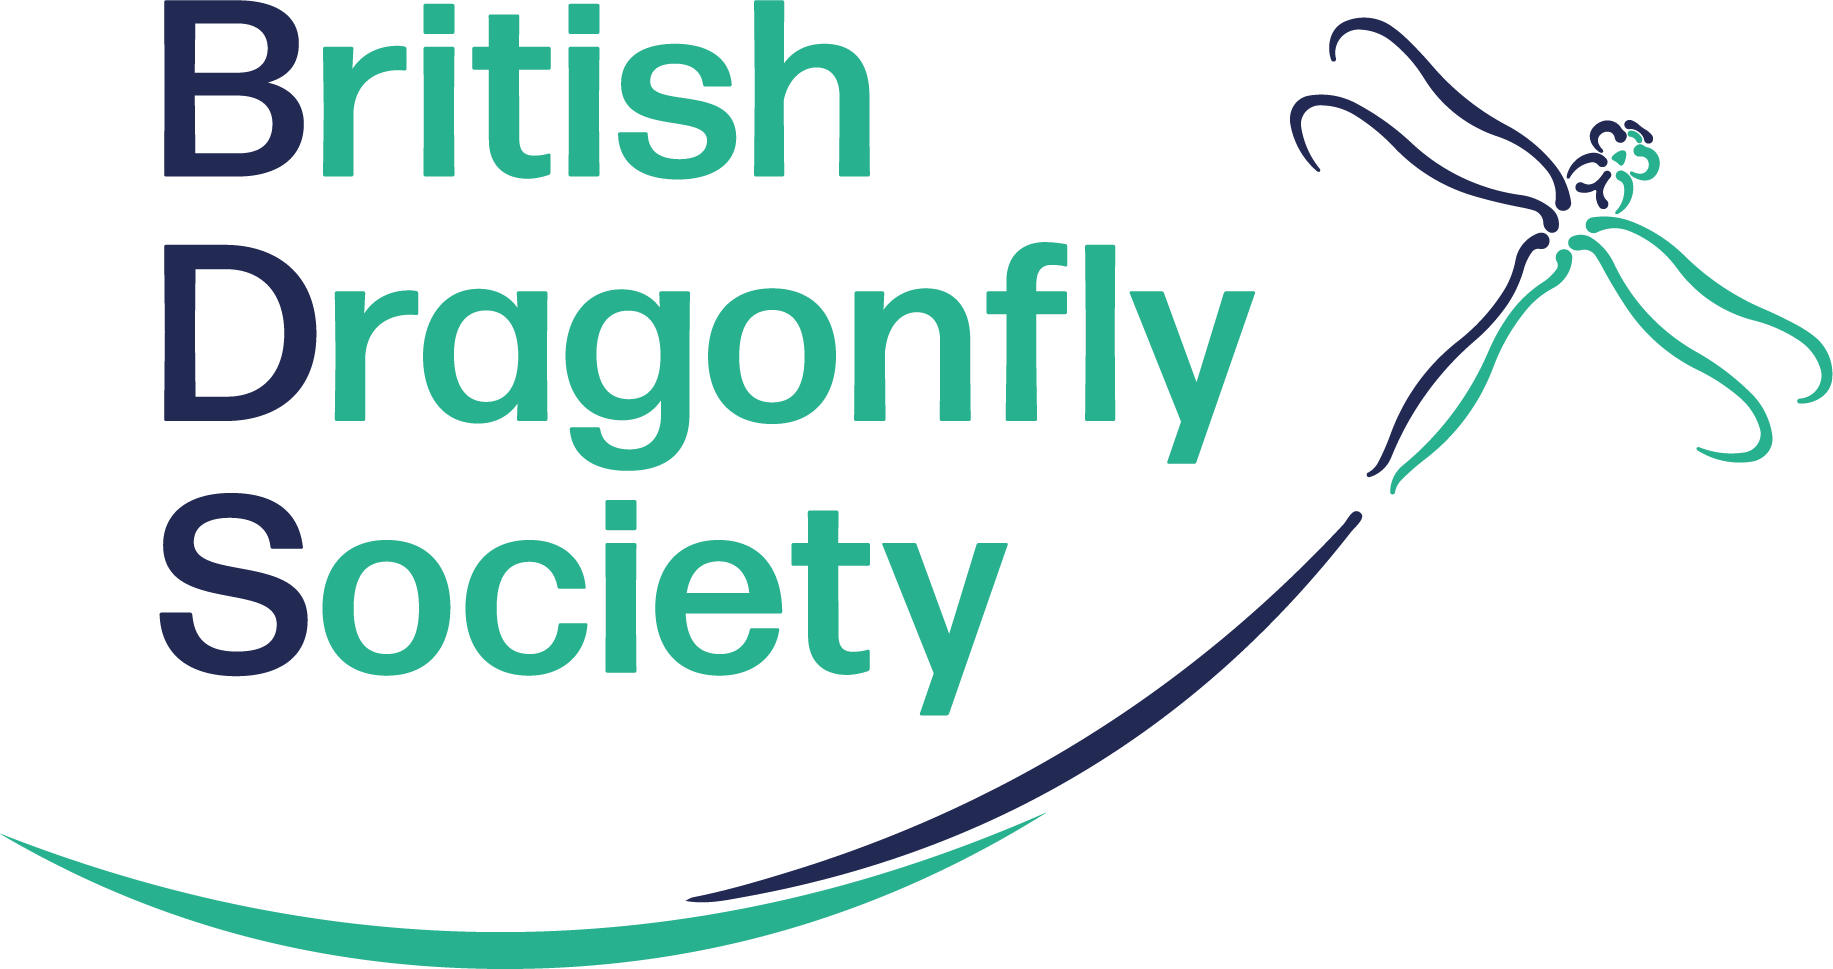 British Dragonfly Society logo